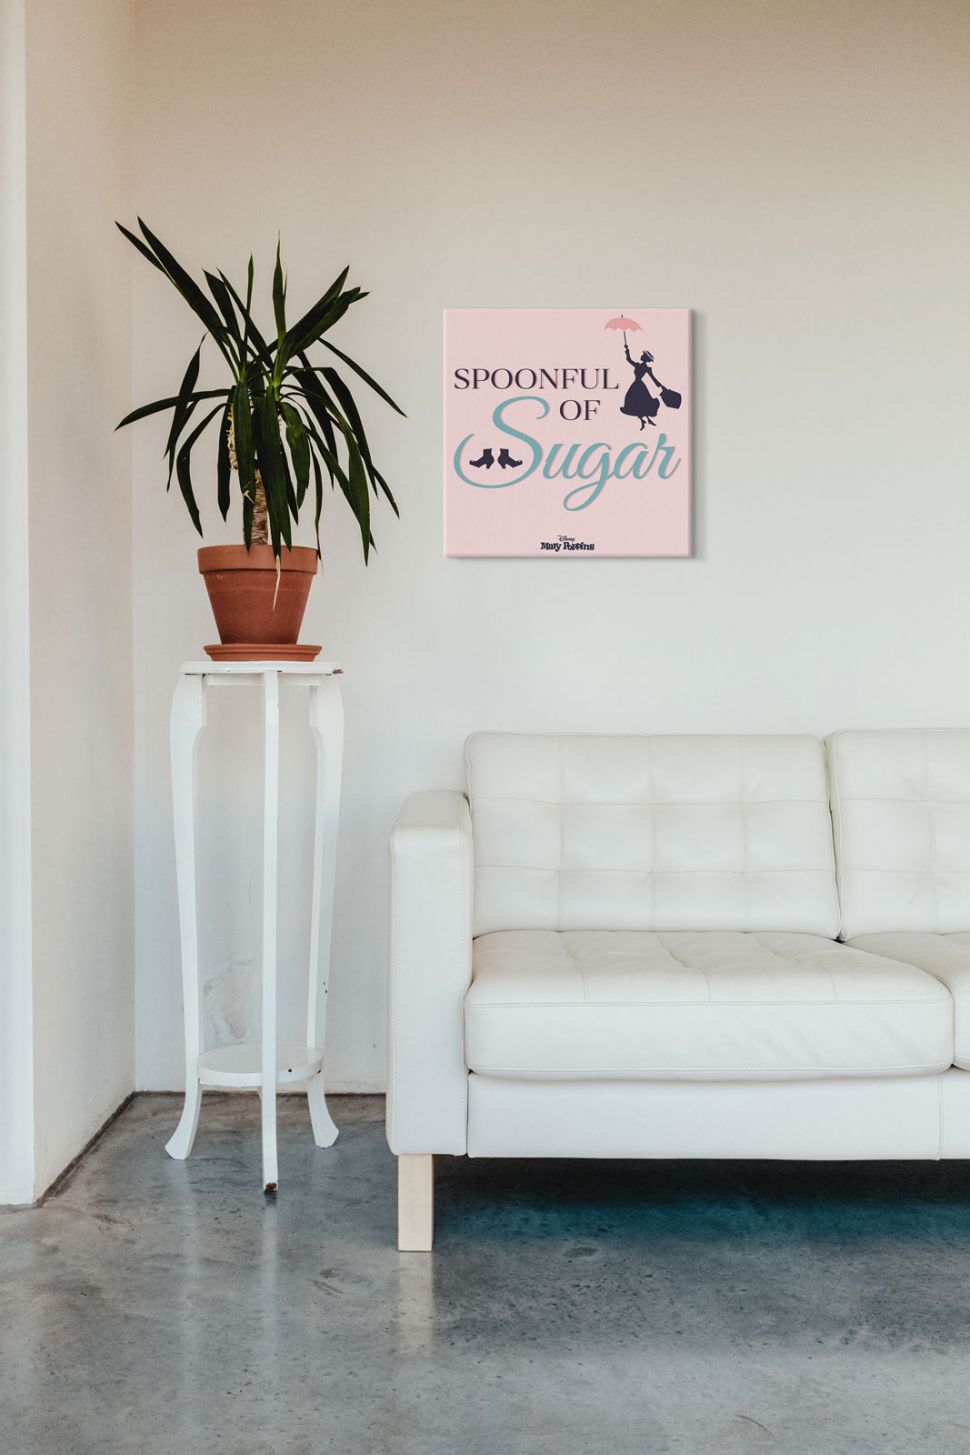 Różowy obraz z napisem Spoonful of Sugar z filmu Mary Poppins powieszony w salonie nad skórzaną białą kanapą obok kwiatka w doniczce